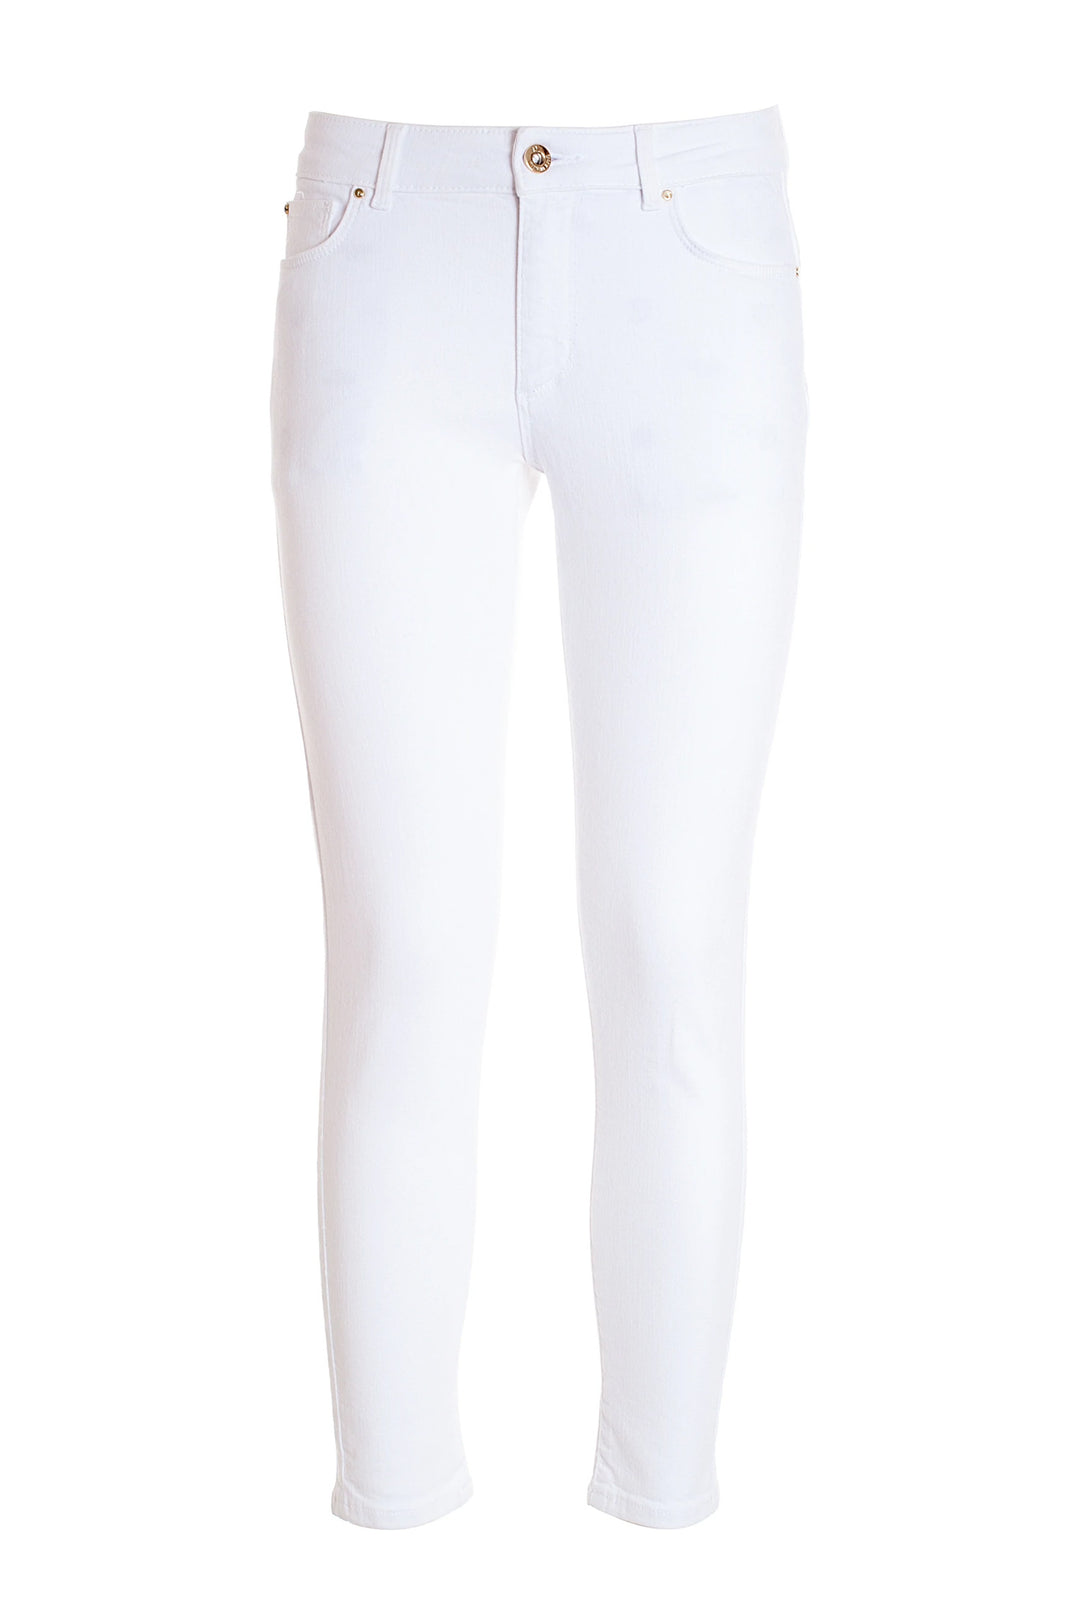 FRACOMINA Pantalone slim effetto push up in gabardine bianco - Mancinelli 1954